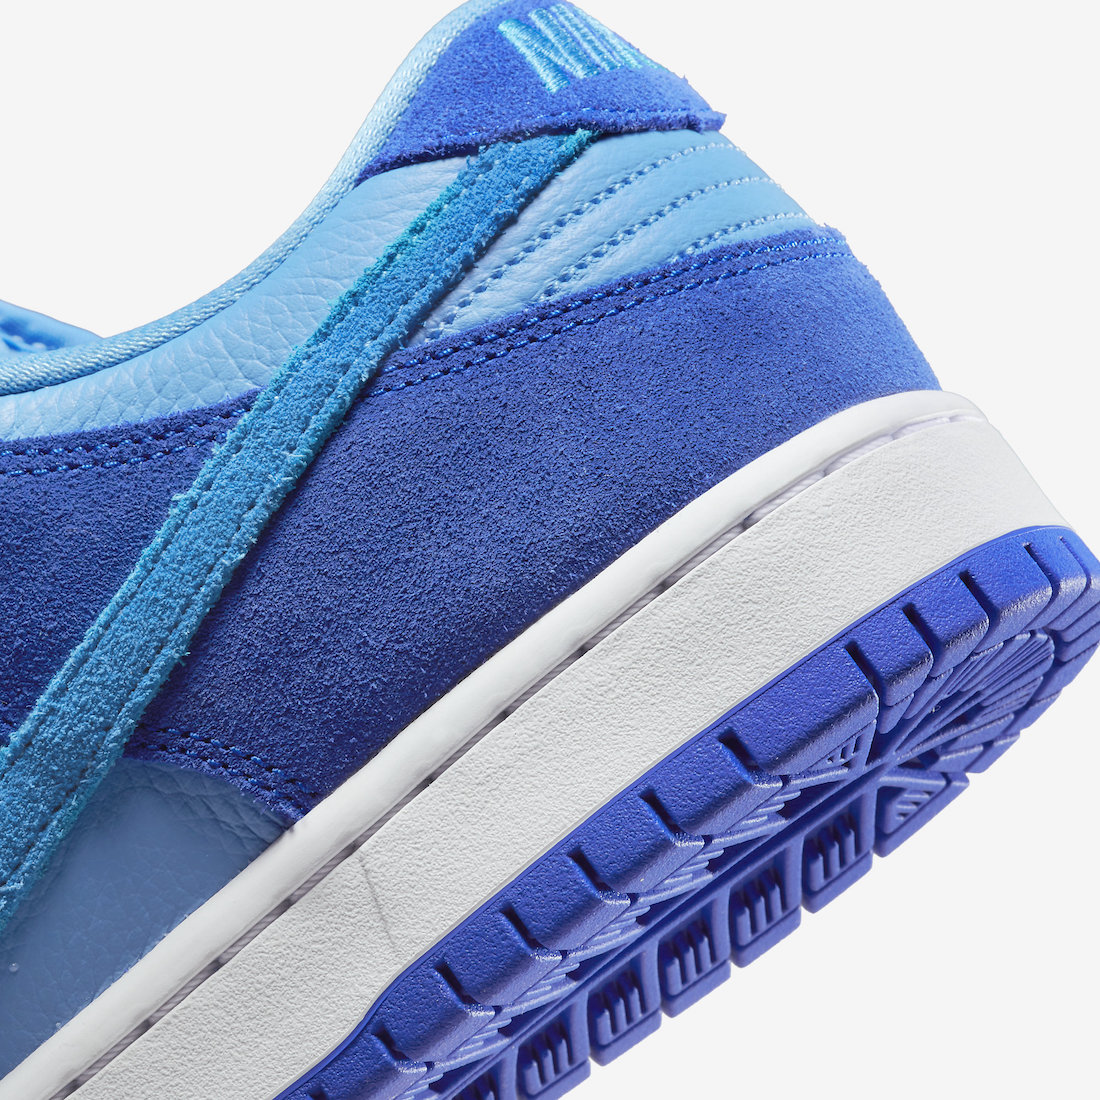 Nike SB Dunk Low Blue Raspberry DM0807-400 Release Date